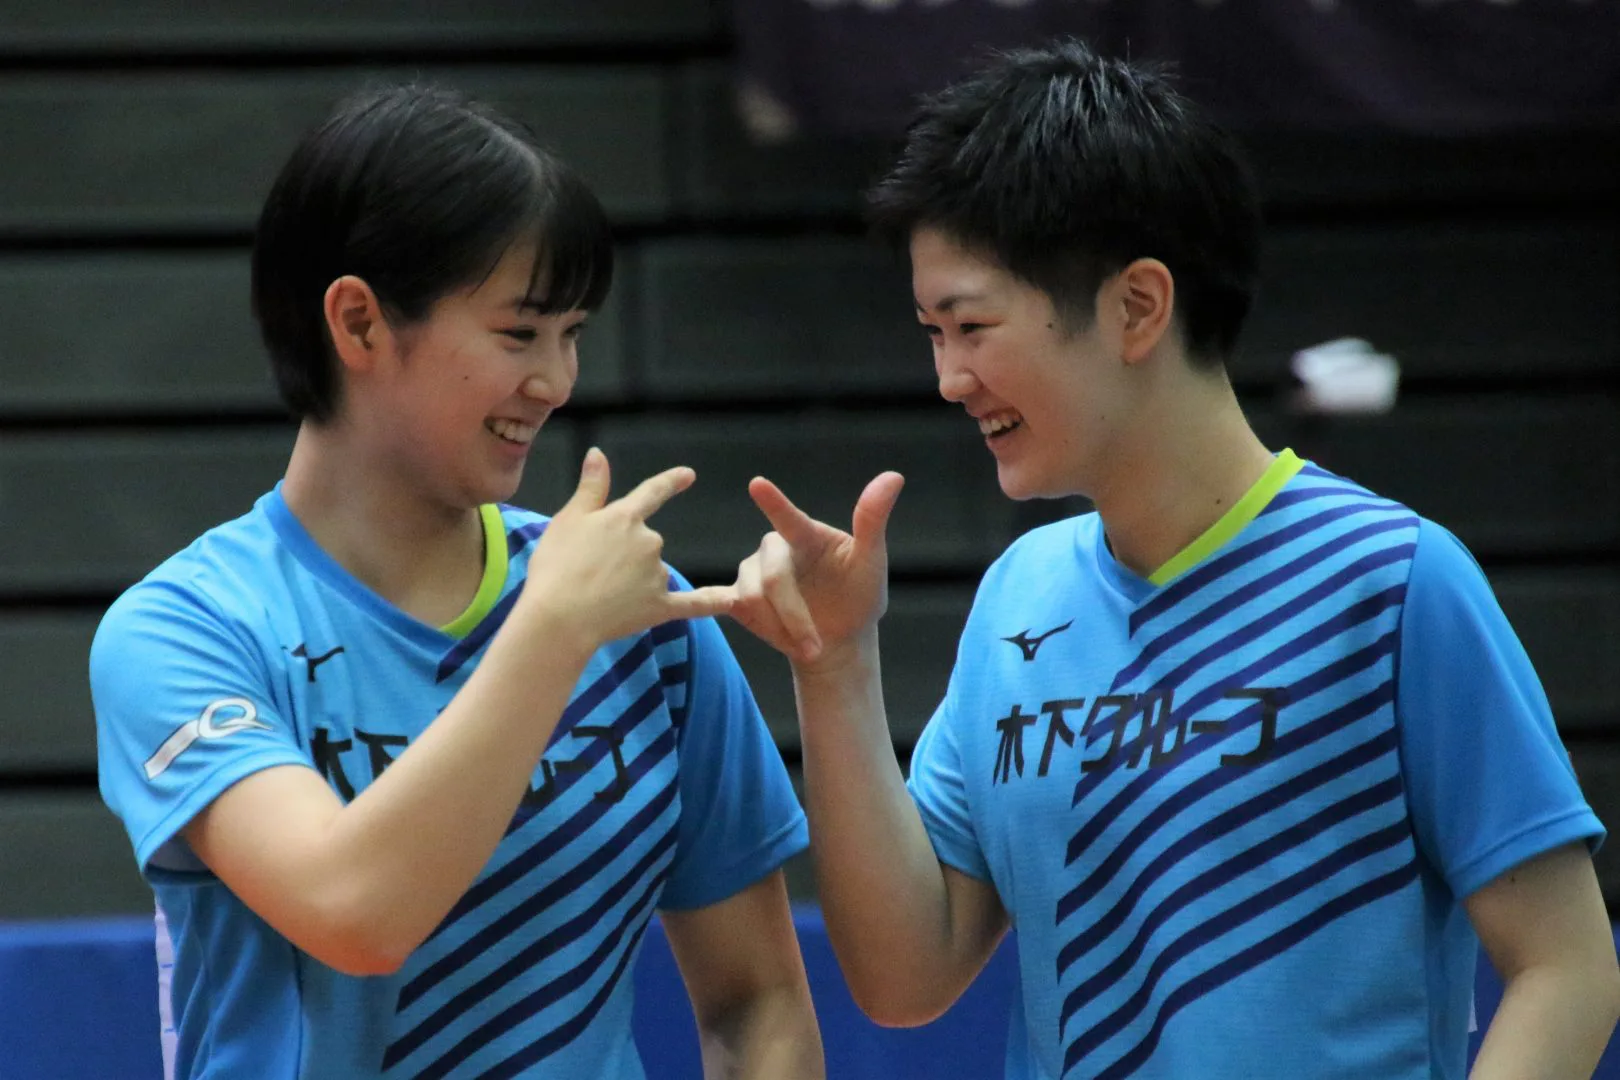 長﨑 木原の世界ジュニア優勝ペアが決めポーズ 女子ダブルス3回戦が終了 全日本卓球 卓球メディア Rallys ラリーズ